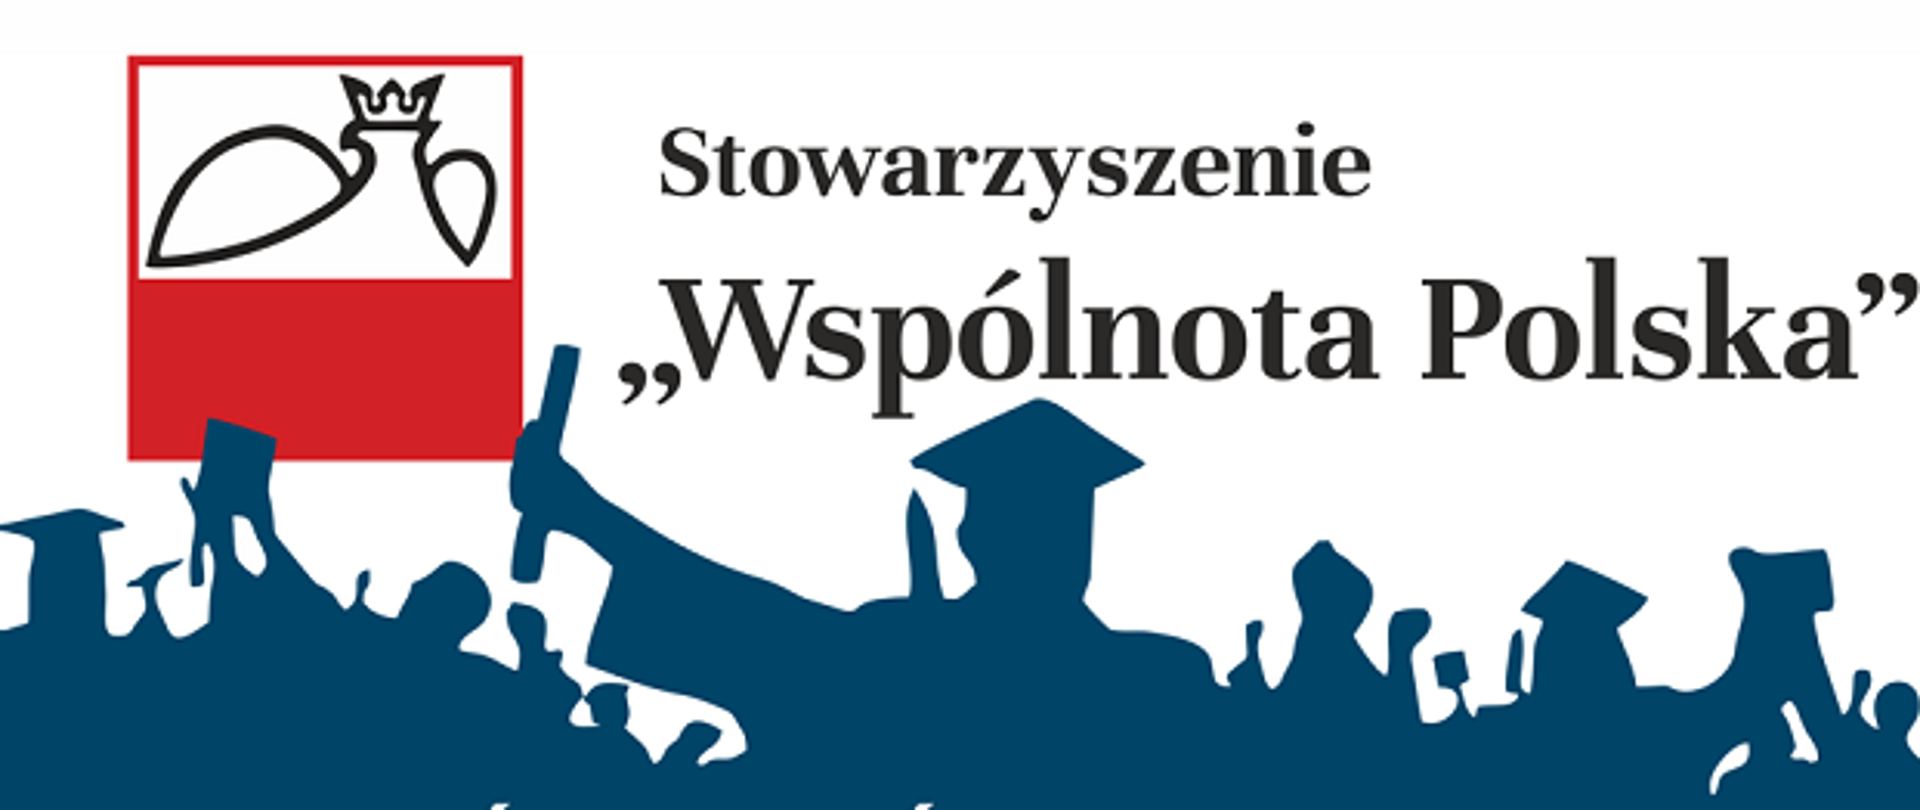 logo Stowarzyszenia Wspólnota Polska